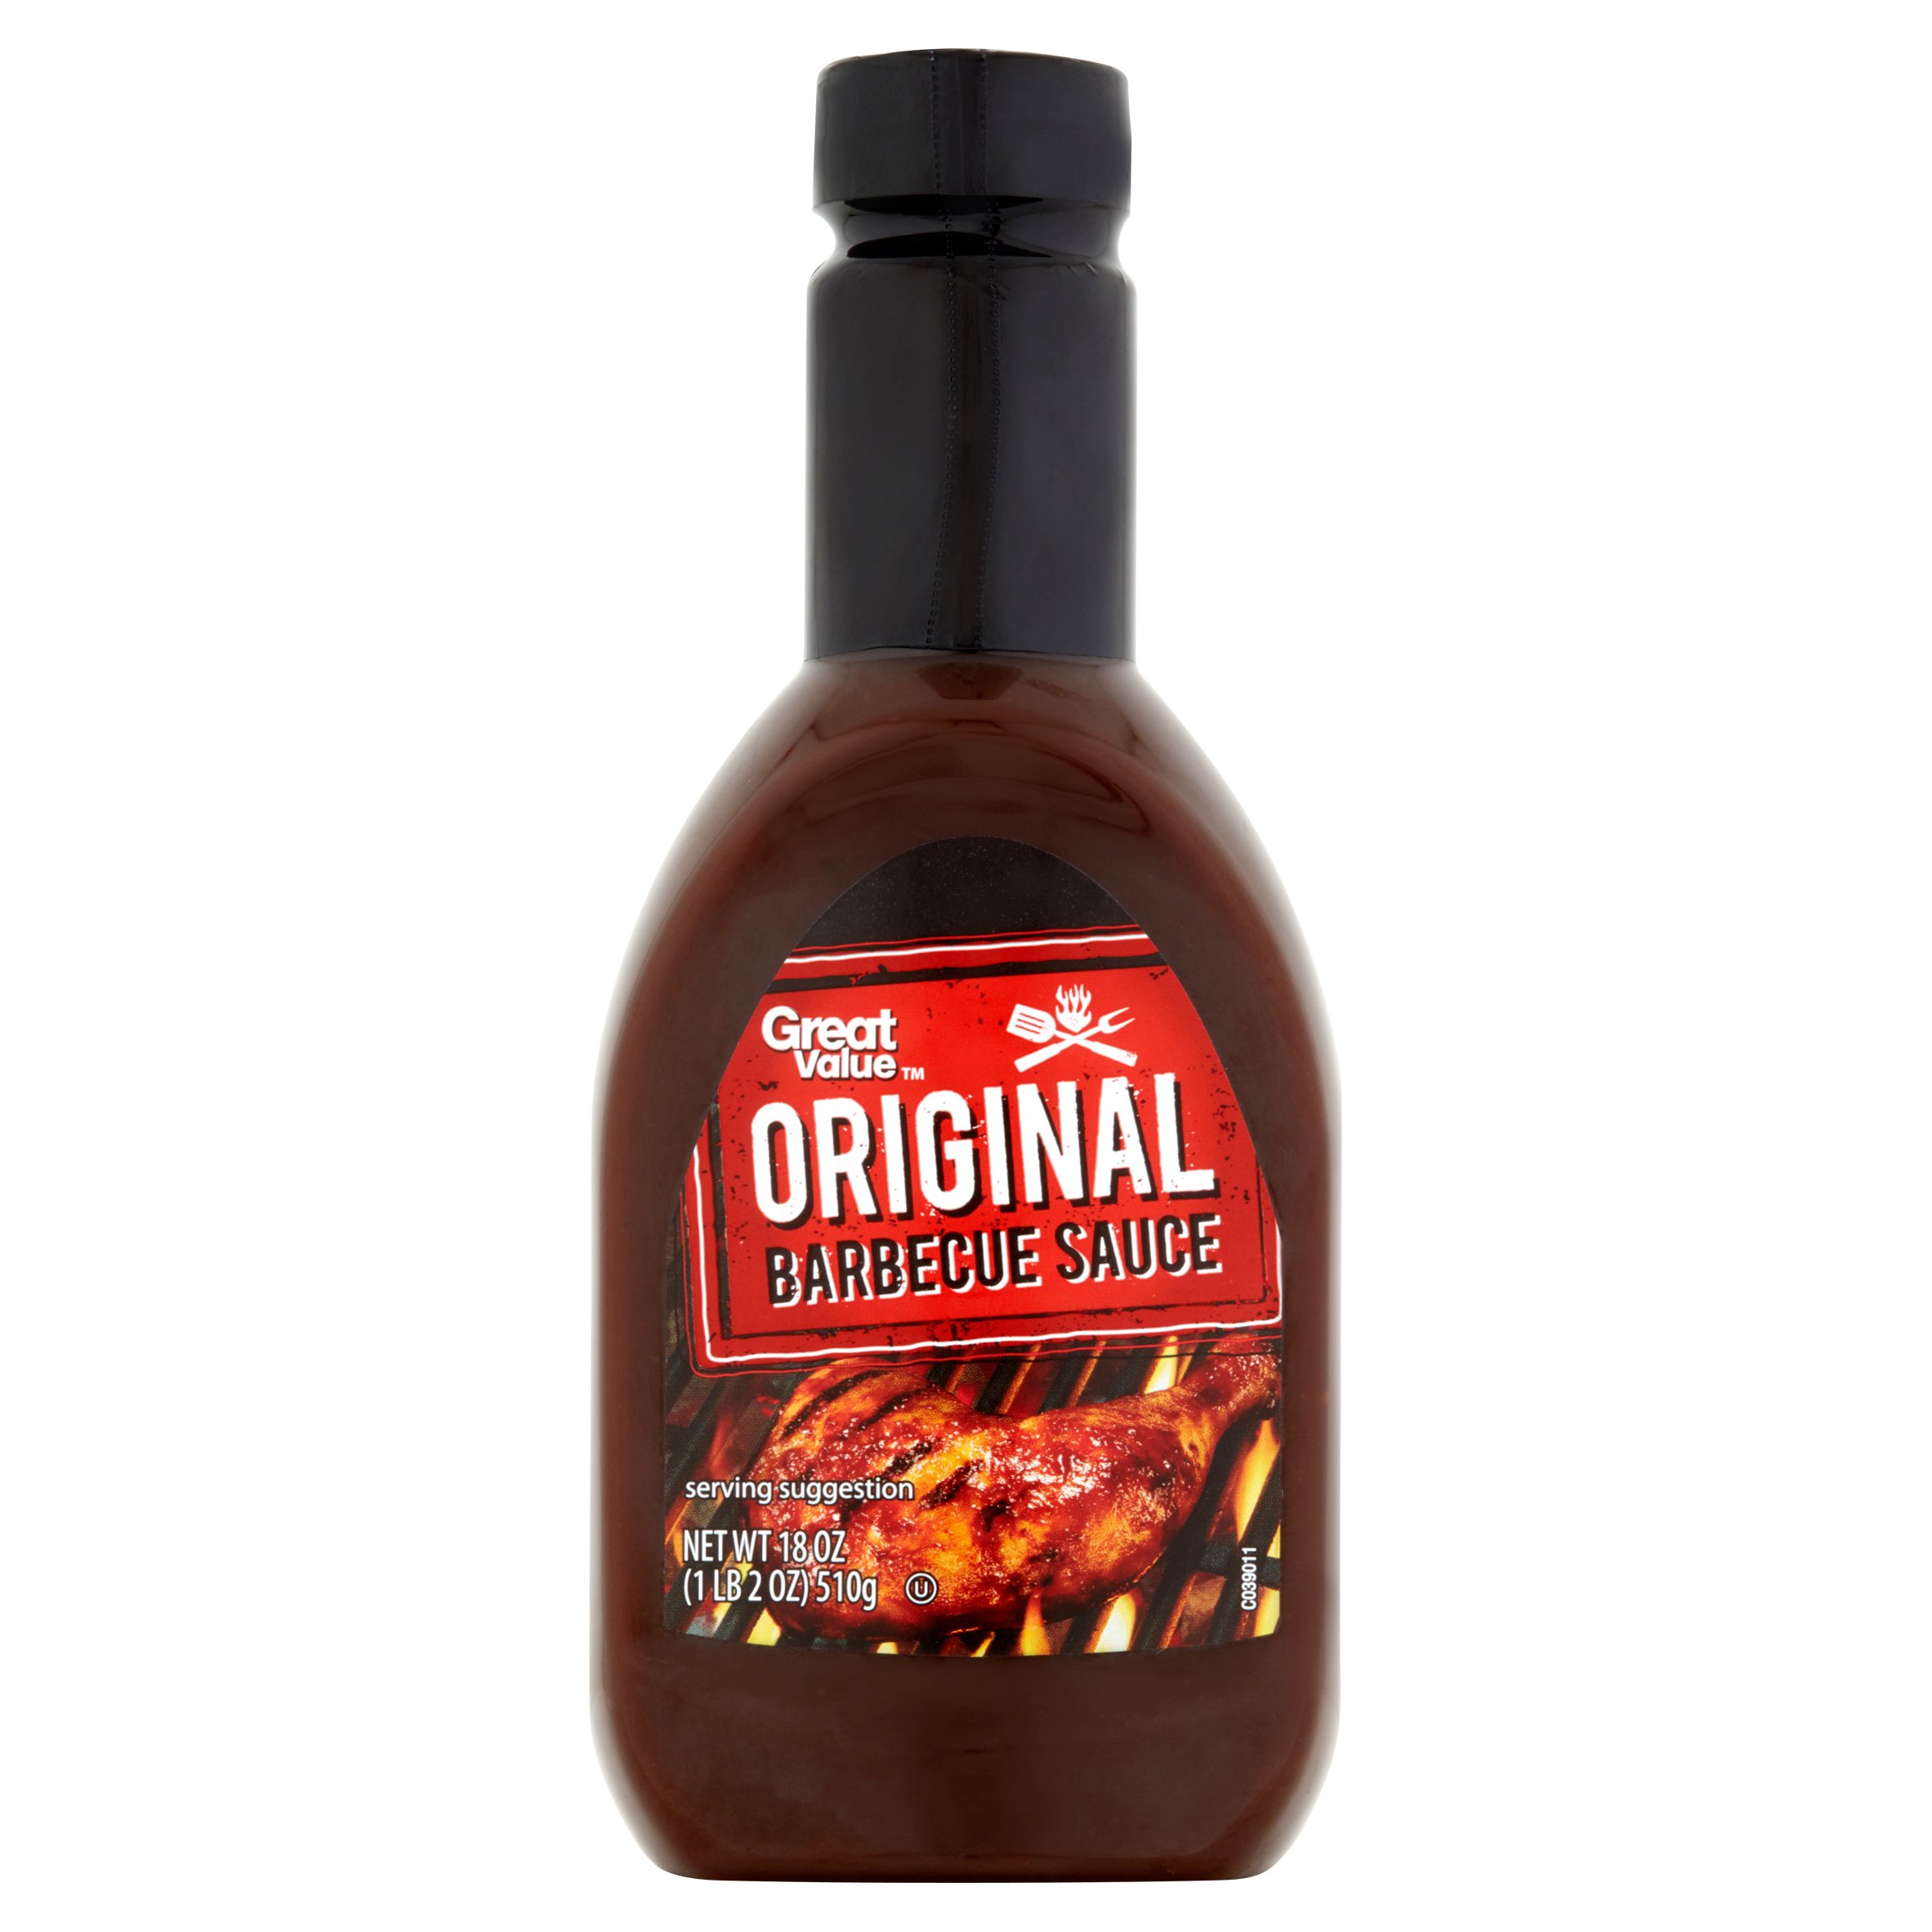 Great Value Original Barbecue Sauce